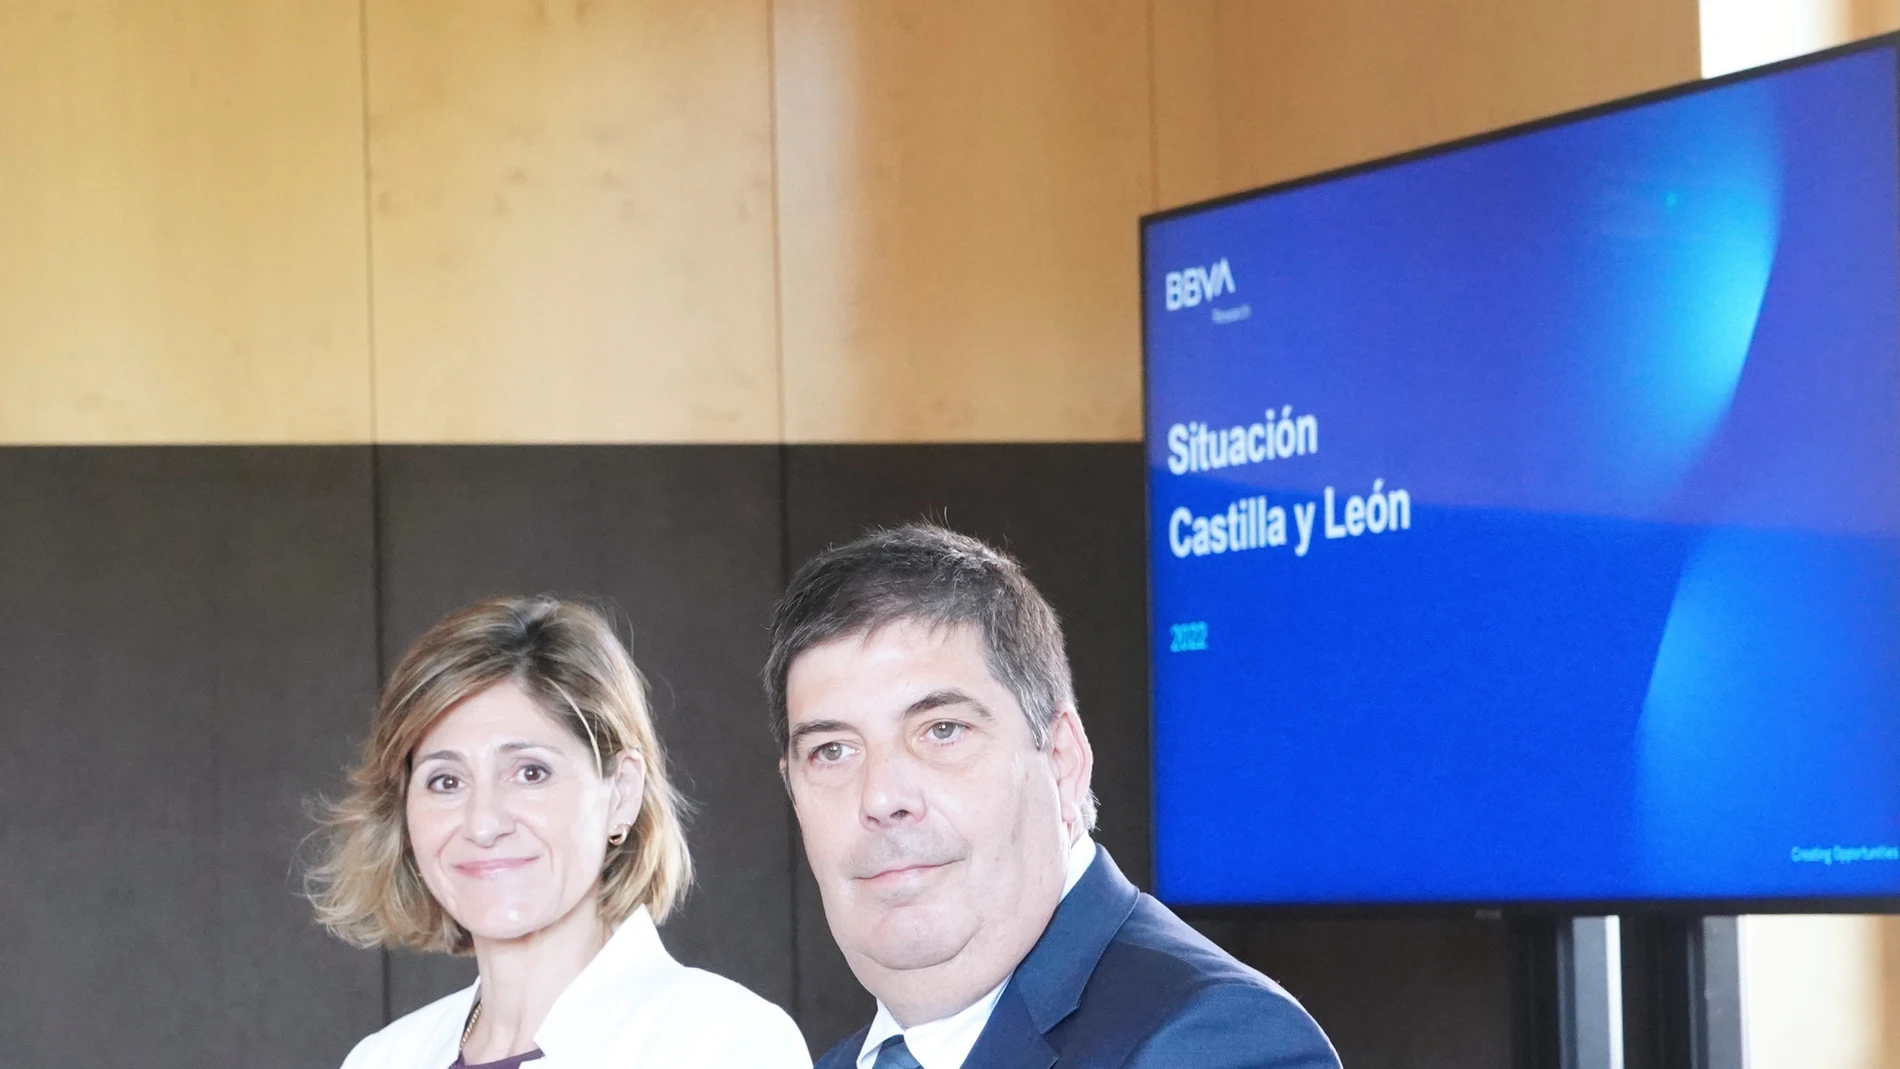 El director de la Territorial Noroeste de BBVA, Marta Alonso, y economista jefe para España de BBVA Research, Miguel Cardoso, presentan la nueva edición del informe "Situación Castilla y León"